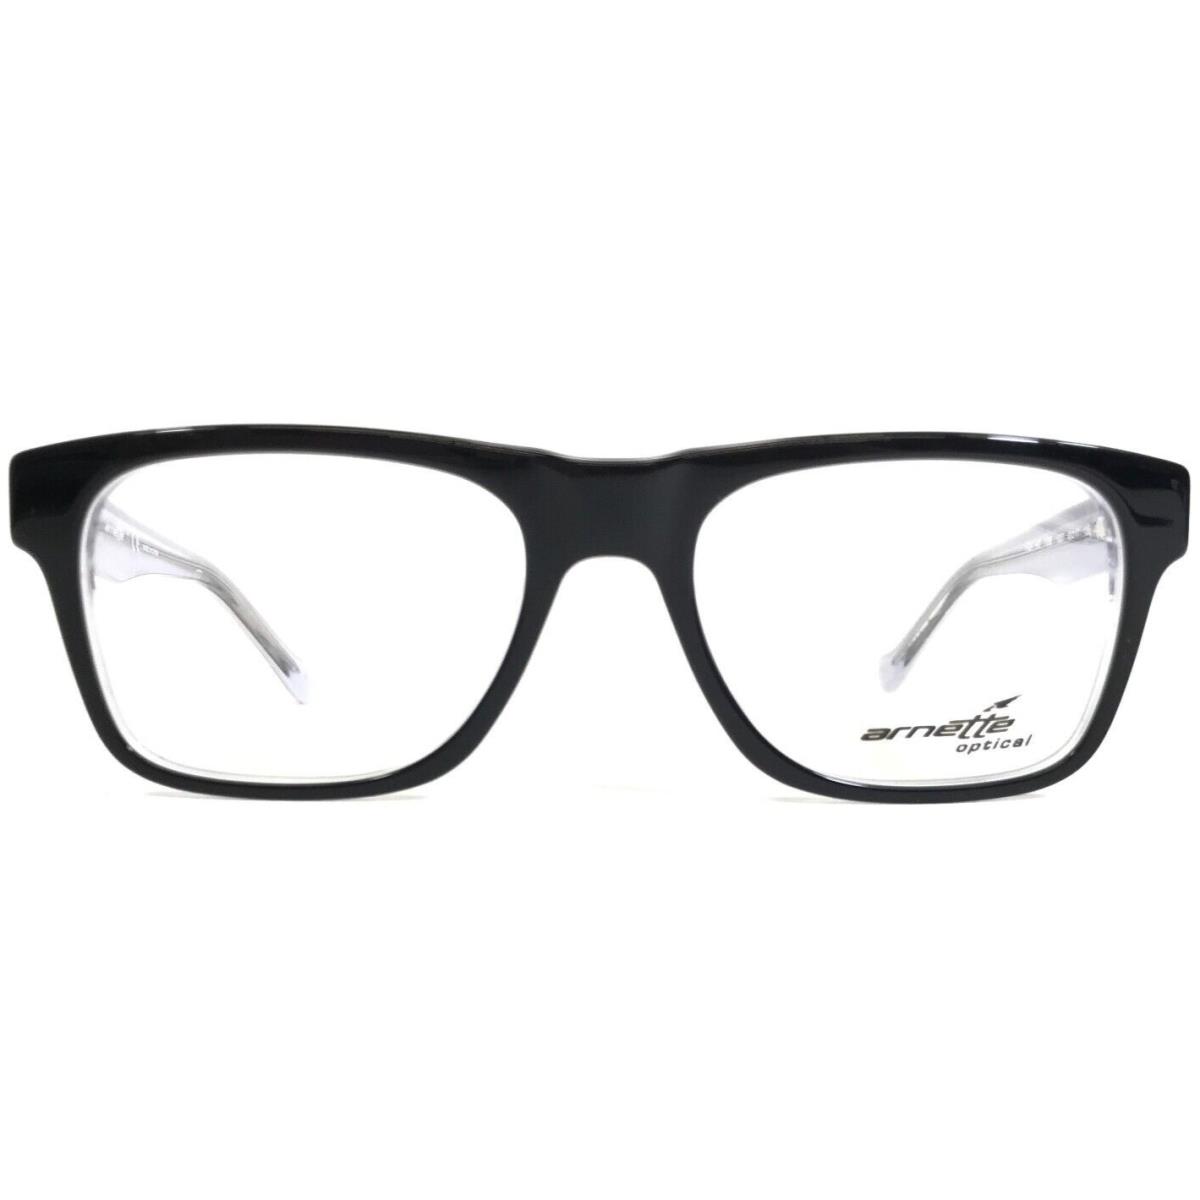 Arnette Small Eyeglasses Frames High Hat 7086 1007 Black White Purple 49-17-135